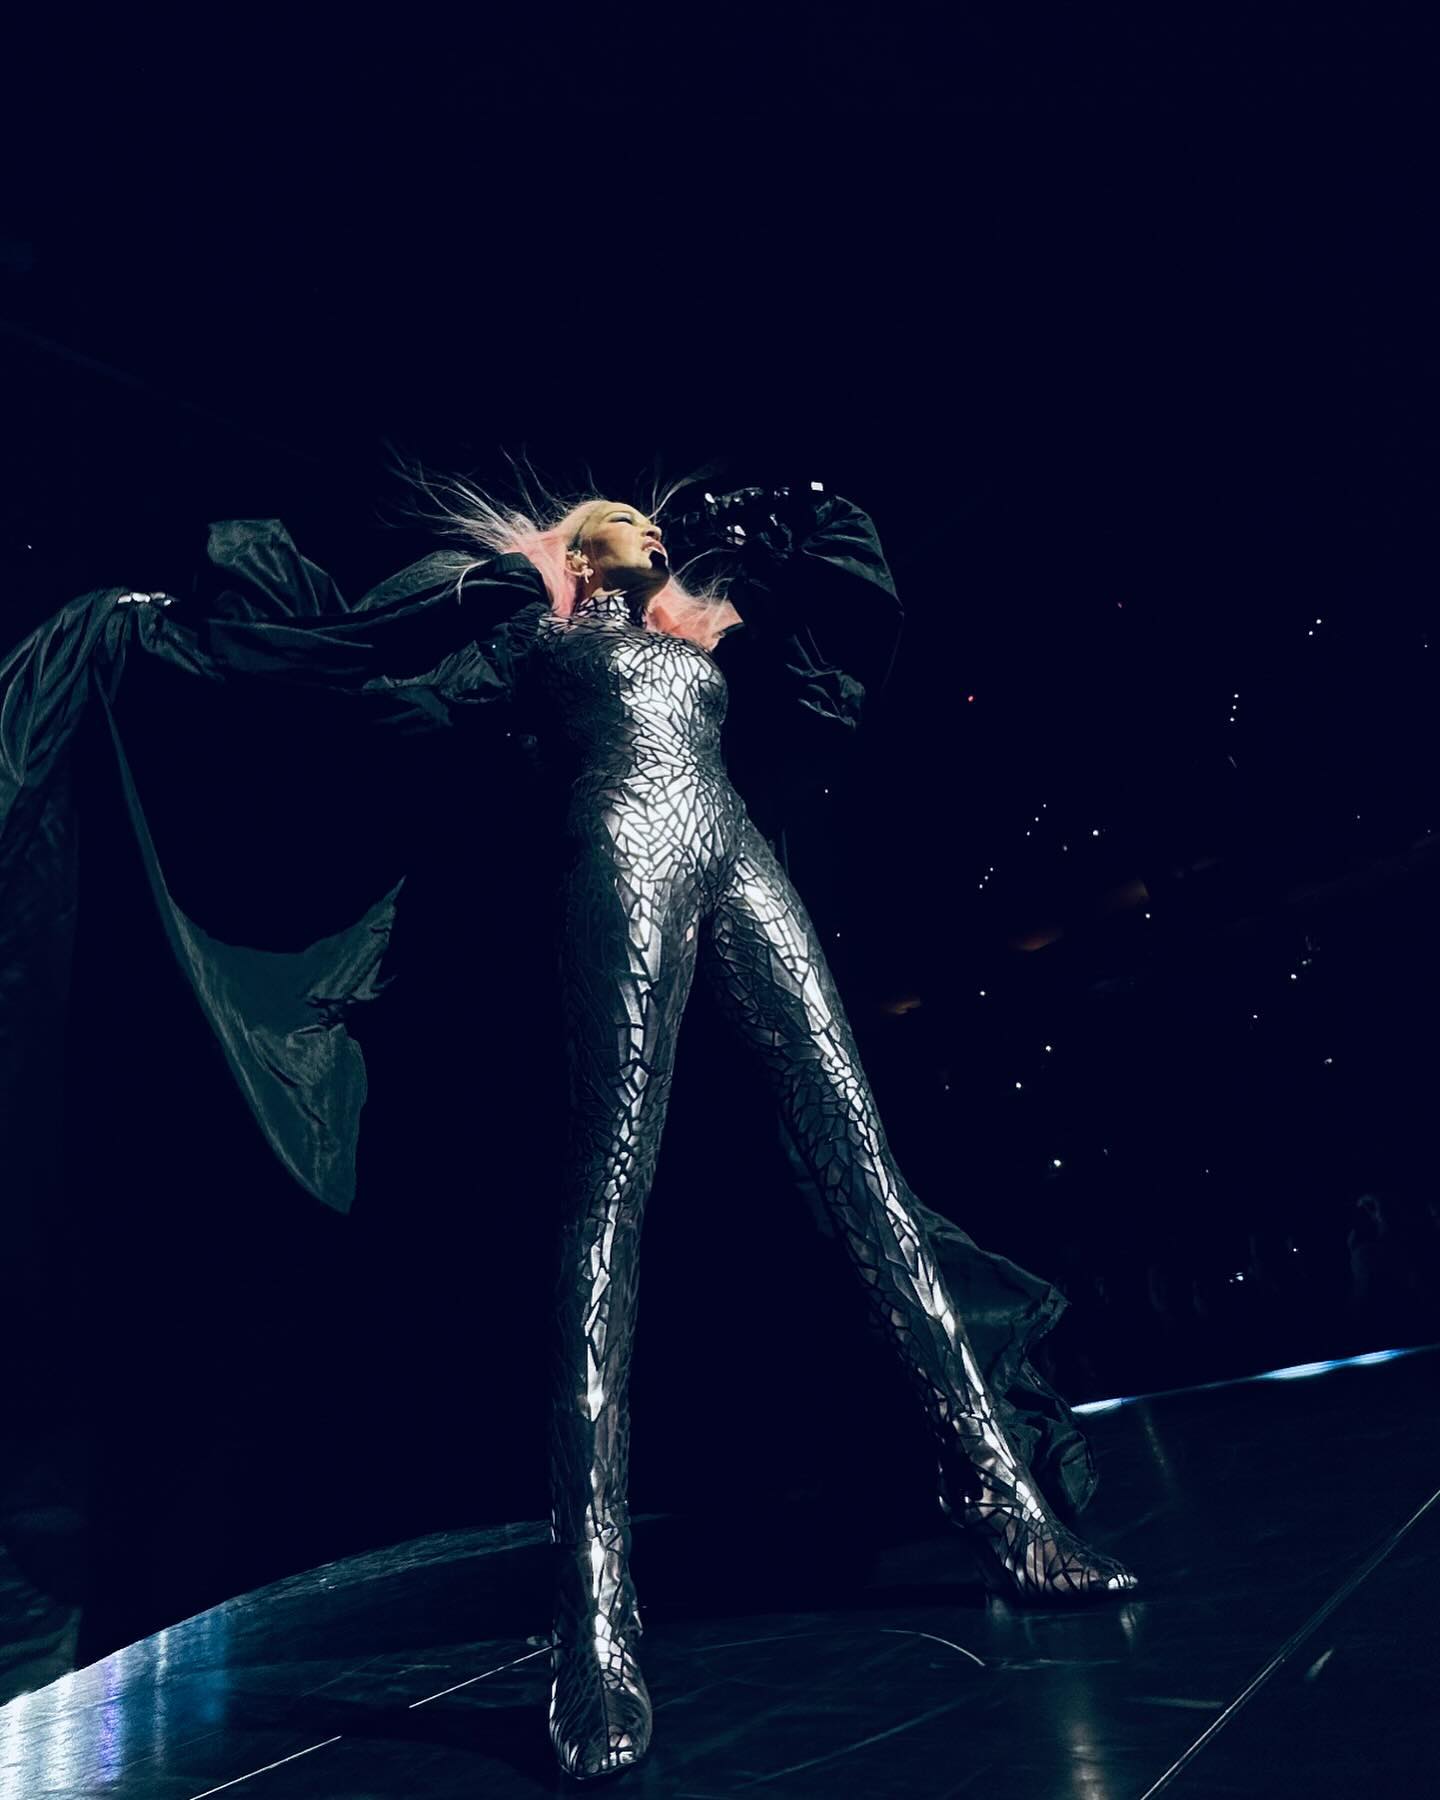 Το ατύχημα της Madonna επί σκηνής -Έπεσε από την καρέκλα ενώ τραγουδούσε